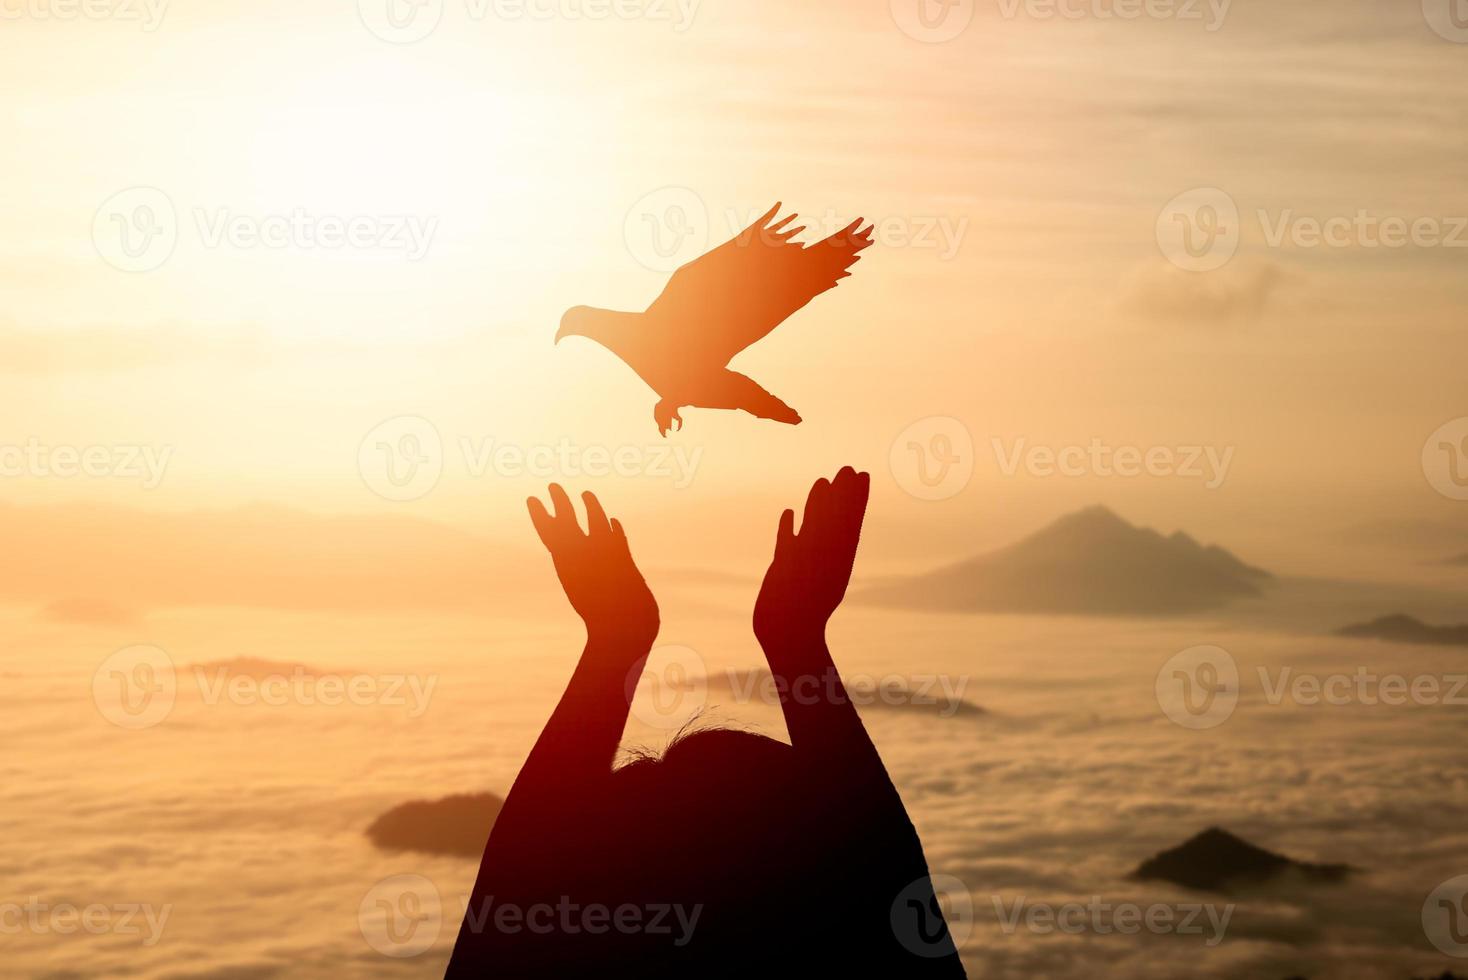 silueta mujer rezando y pájaro libre paloma volando en el cielo disfrutando de la naturaleza brumosa niebla montaña amanecer o atardecer en el fondo de la naturaleza, concepto de religión de esperanza. foto